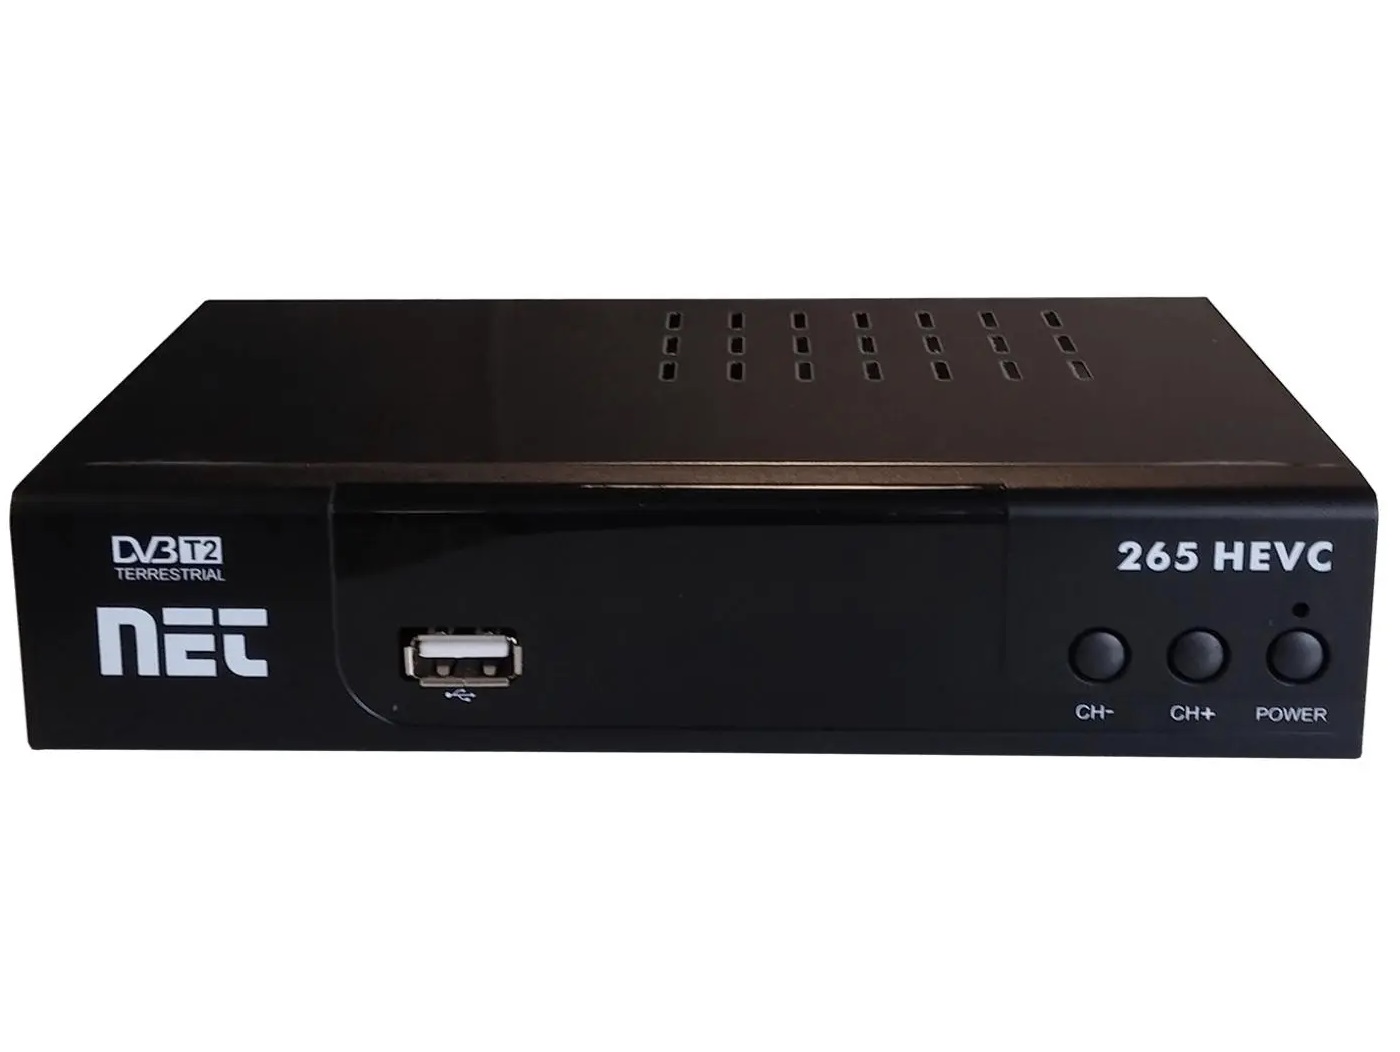 Prijemnik receiver zemaljski NET 265 HEVC DVB-T2 H.265 display SCART HDMI